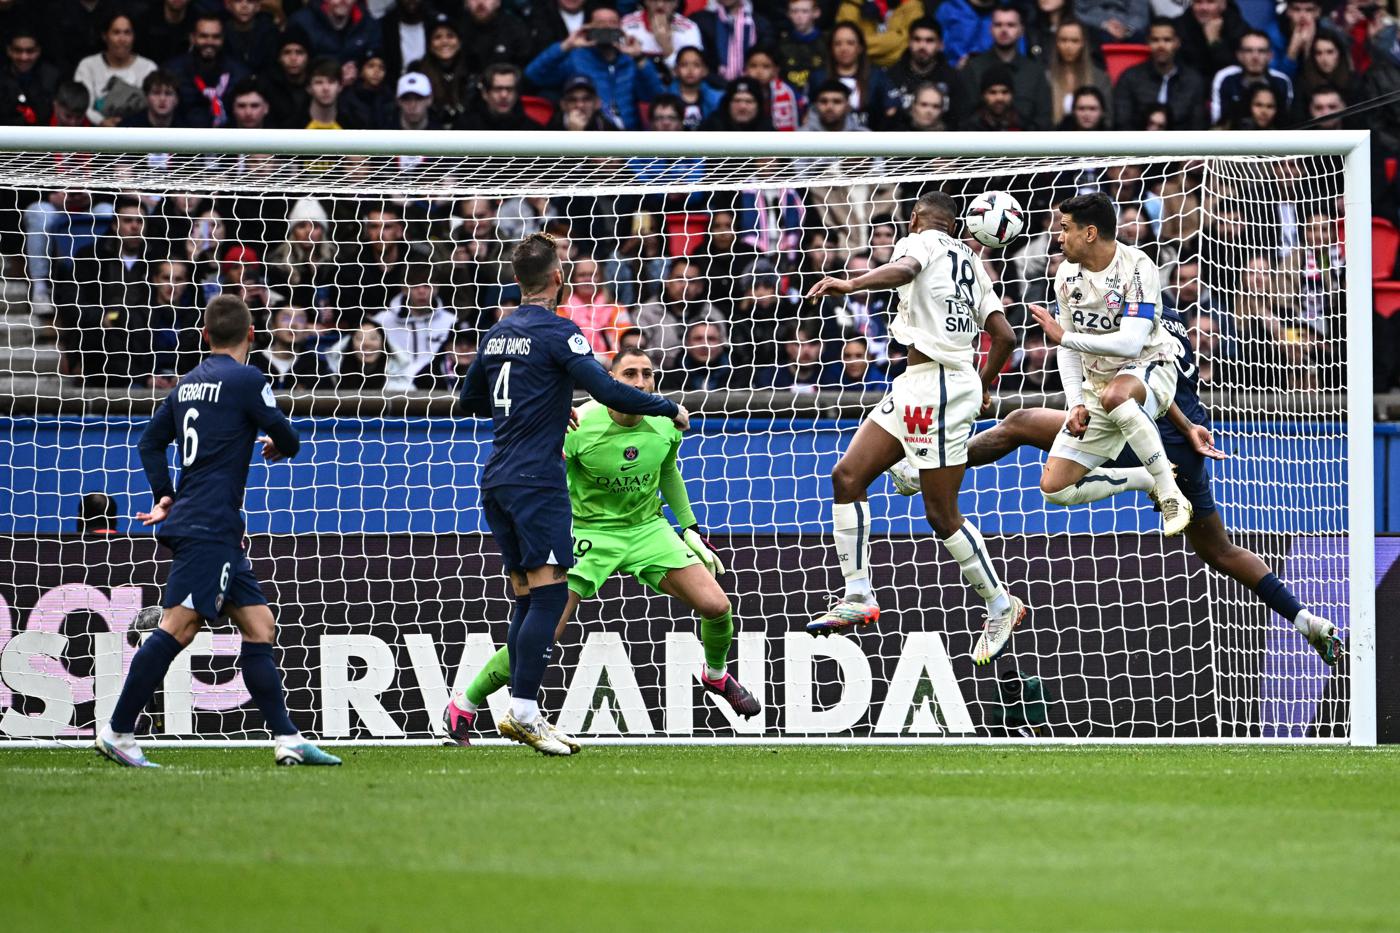 PSG - Lille - 4:3. Französische Meisterschaft, 24. Runde. Spielbericht, Statistiken